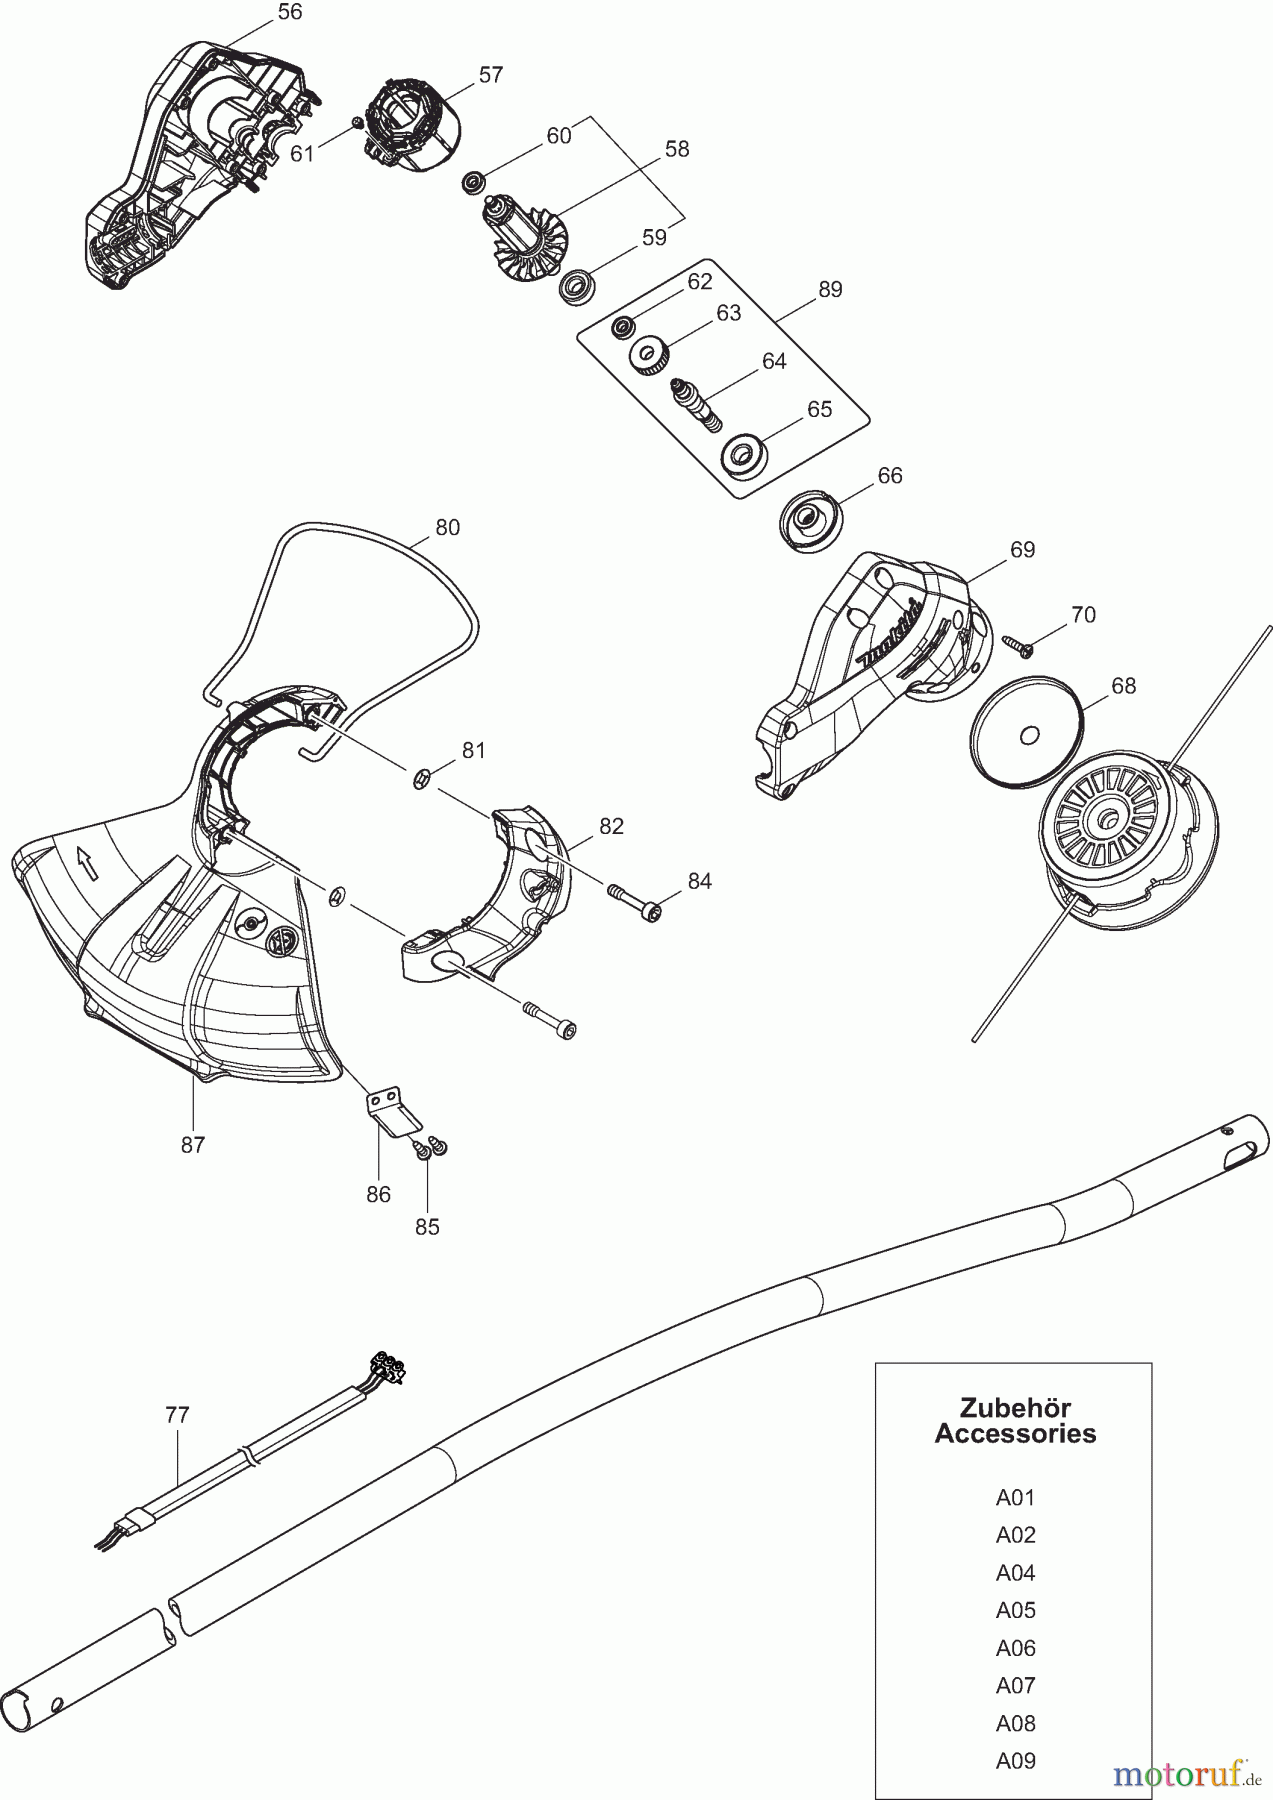  Dolmar Motorsensen & Trimmer Akku DUR189 2  Motor, Schutzhaube, Zubehör